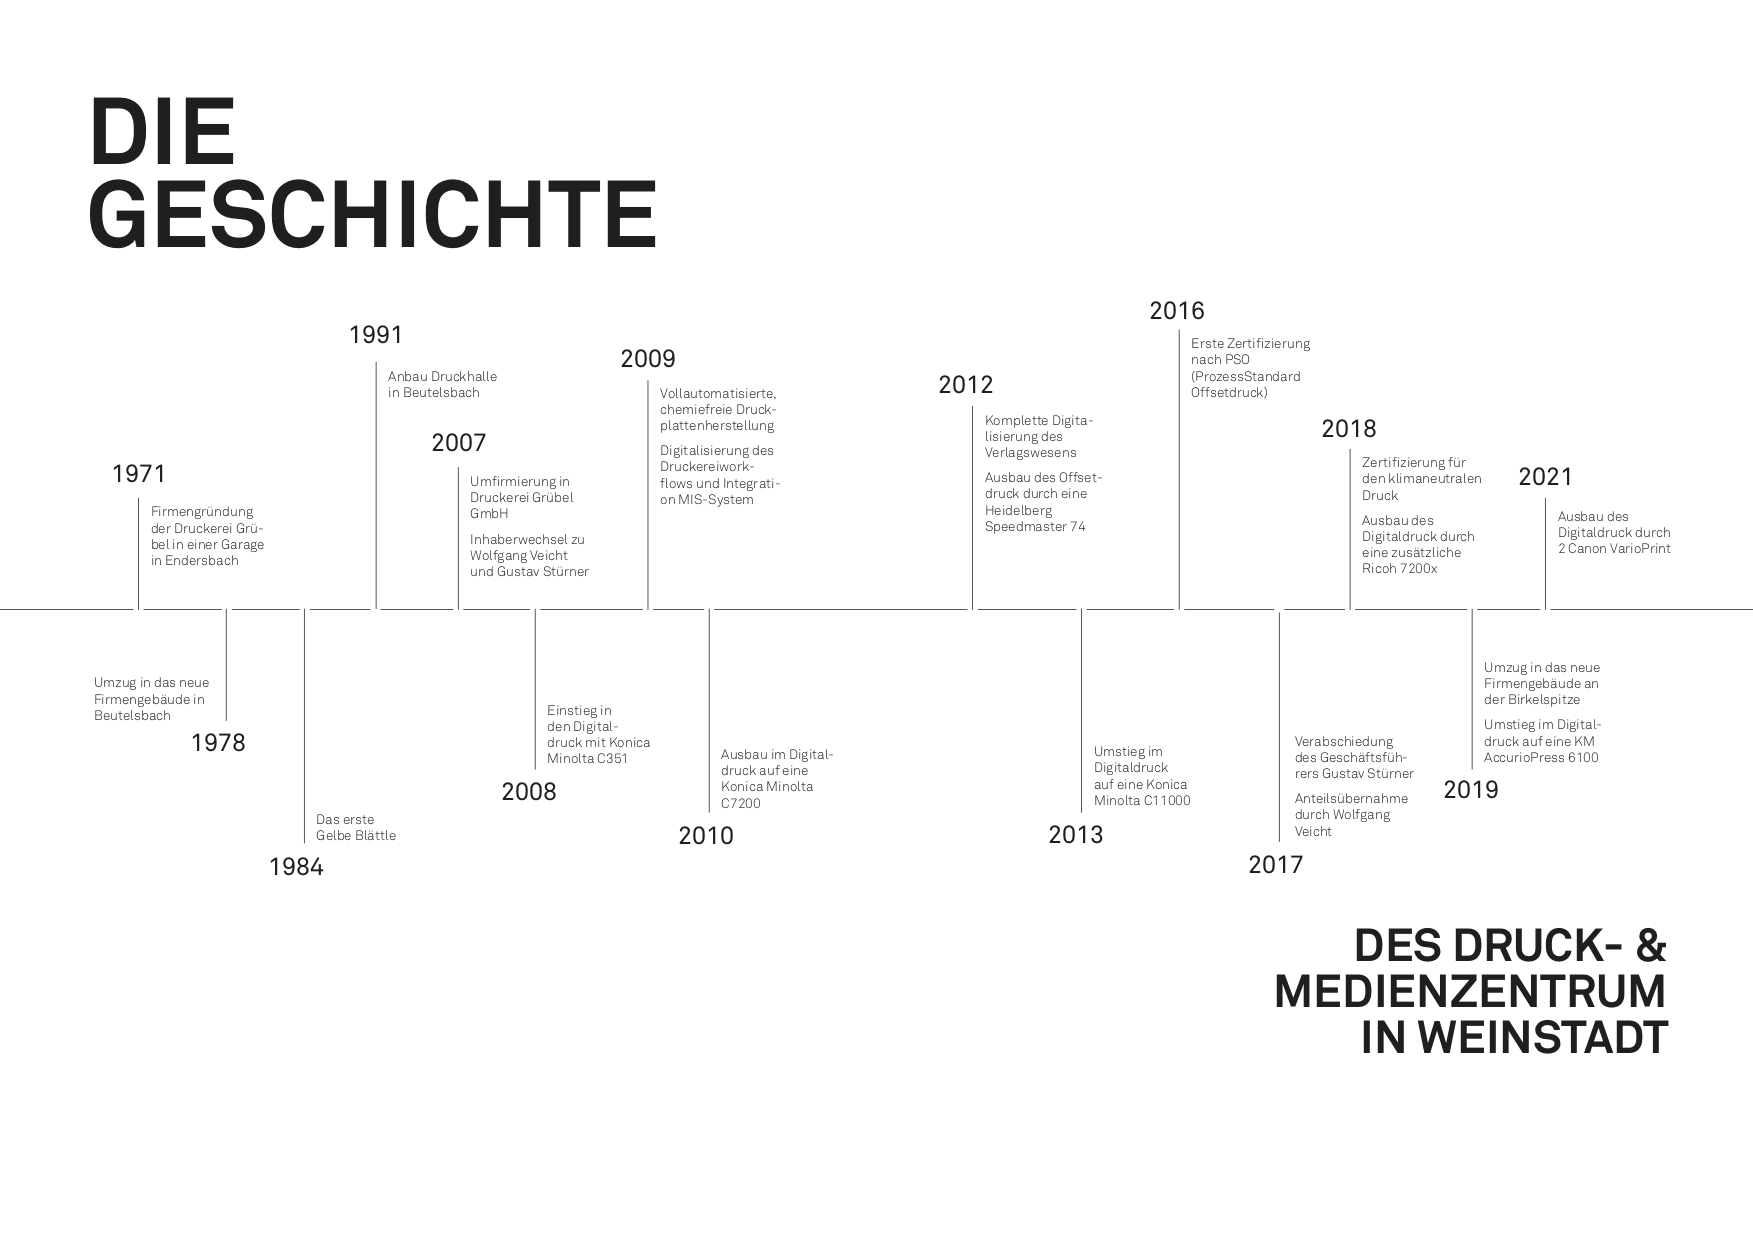 DMZ Geschichte Timeline